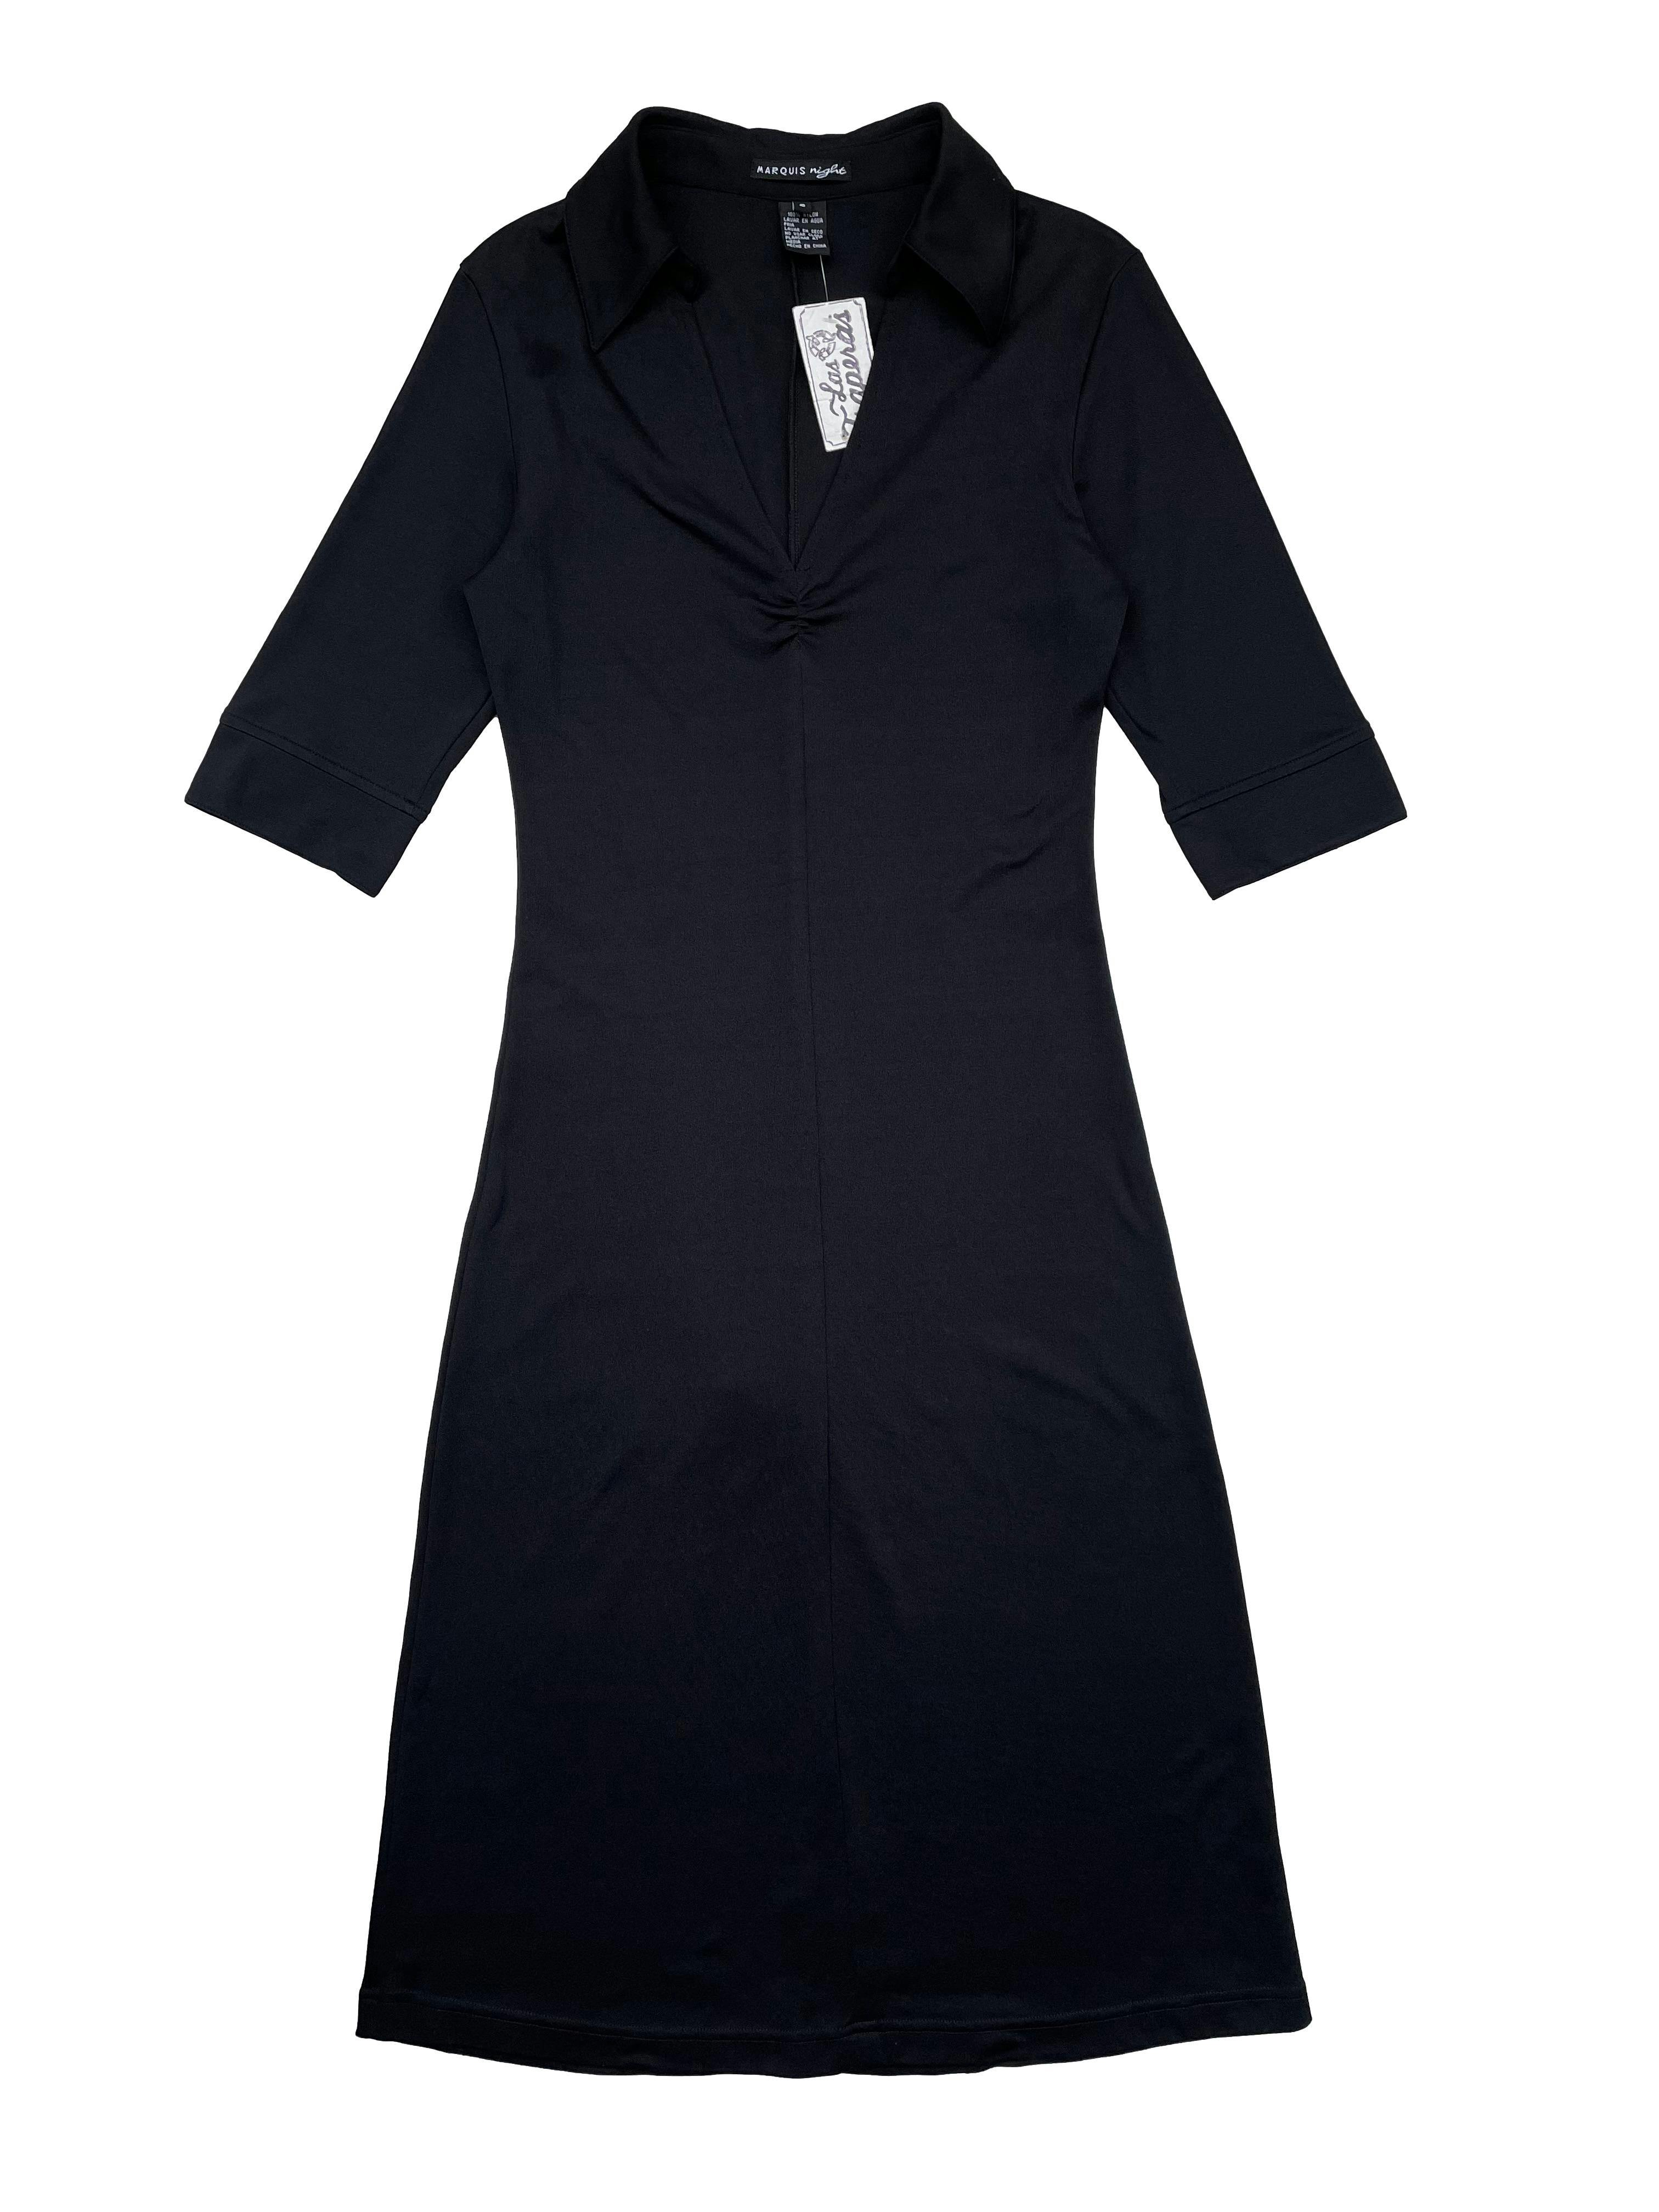 Vestido negro Marquis, tela stretch, cuello camisero con escote en V y pequeño fruncido, mangas 3/4. Busto 80cm sin estirar, Largo 102cm.